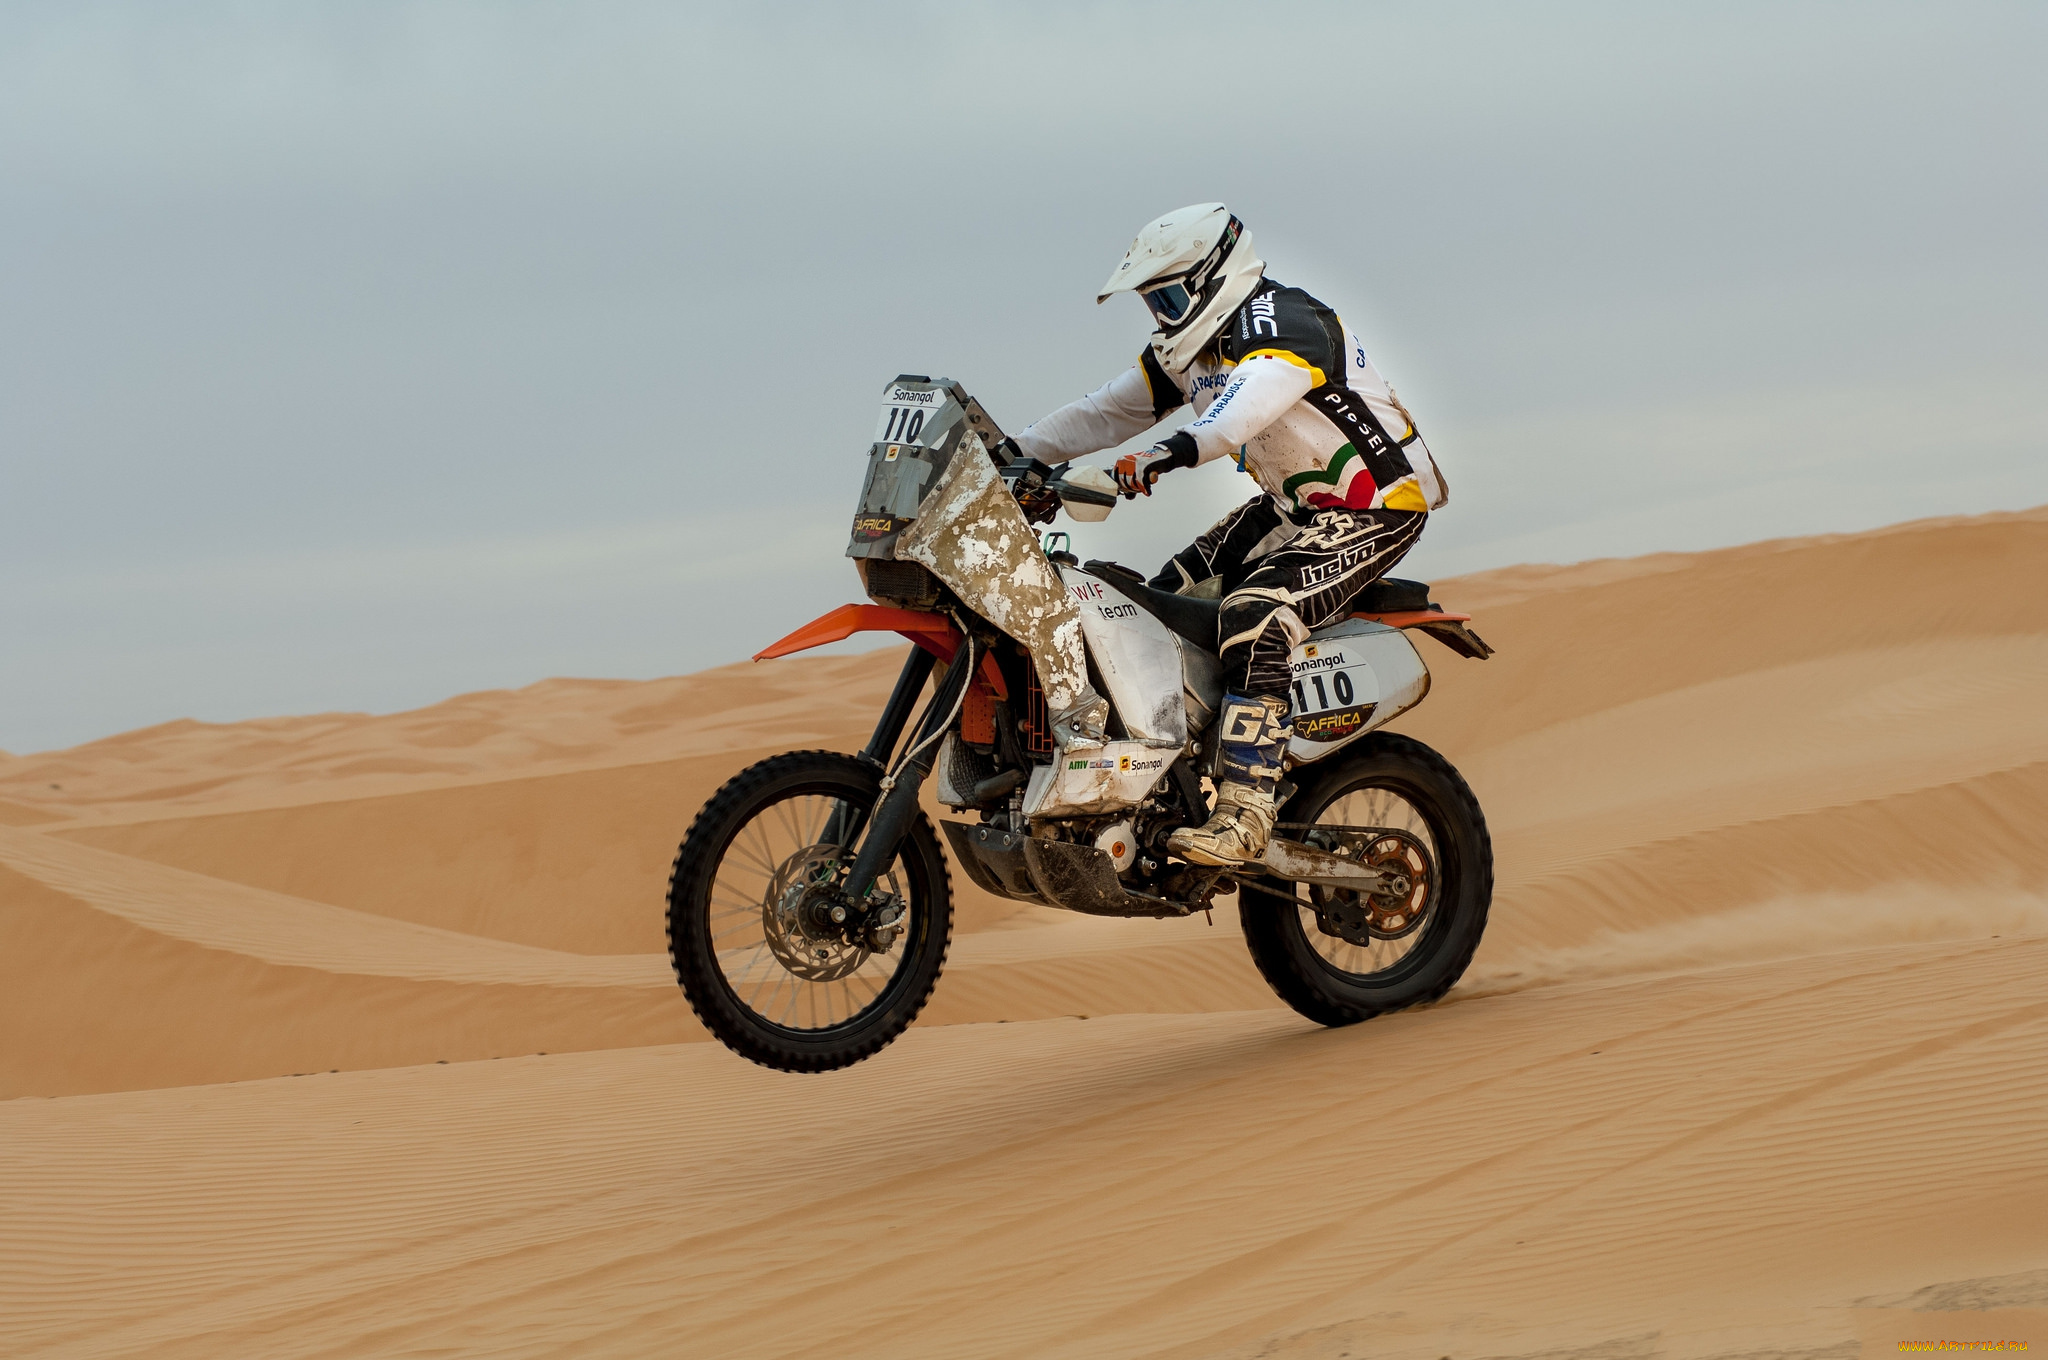 спорт, мотокросс, пустыня, мотоцикл, ралли